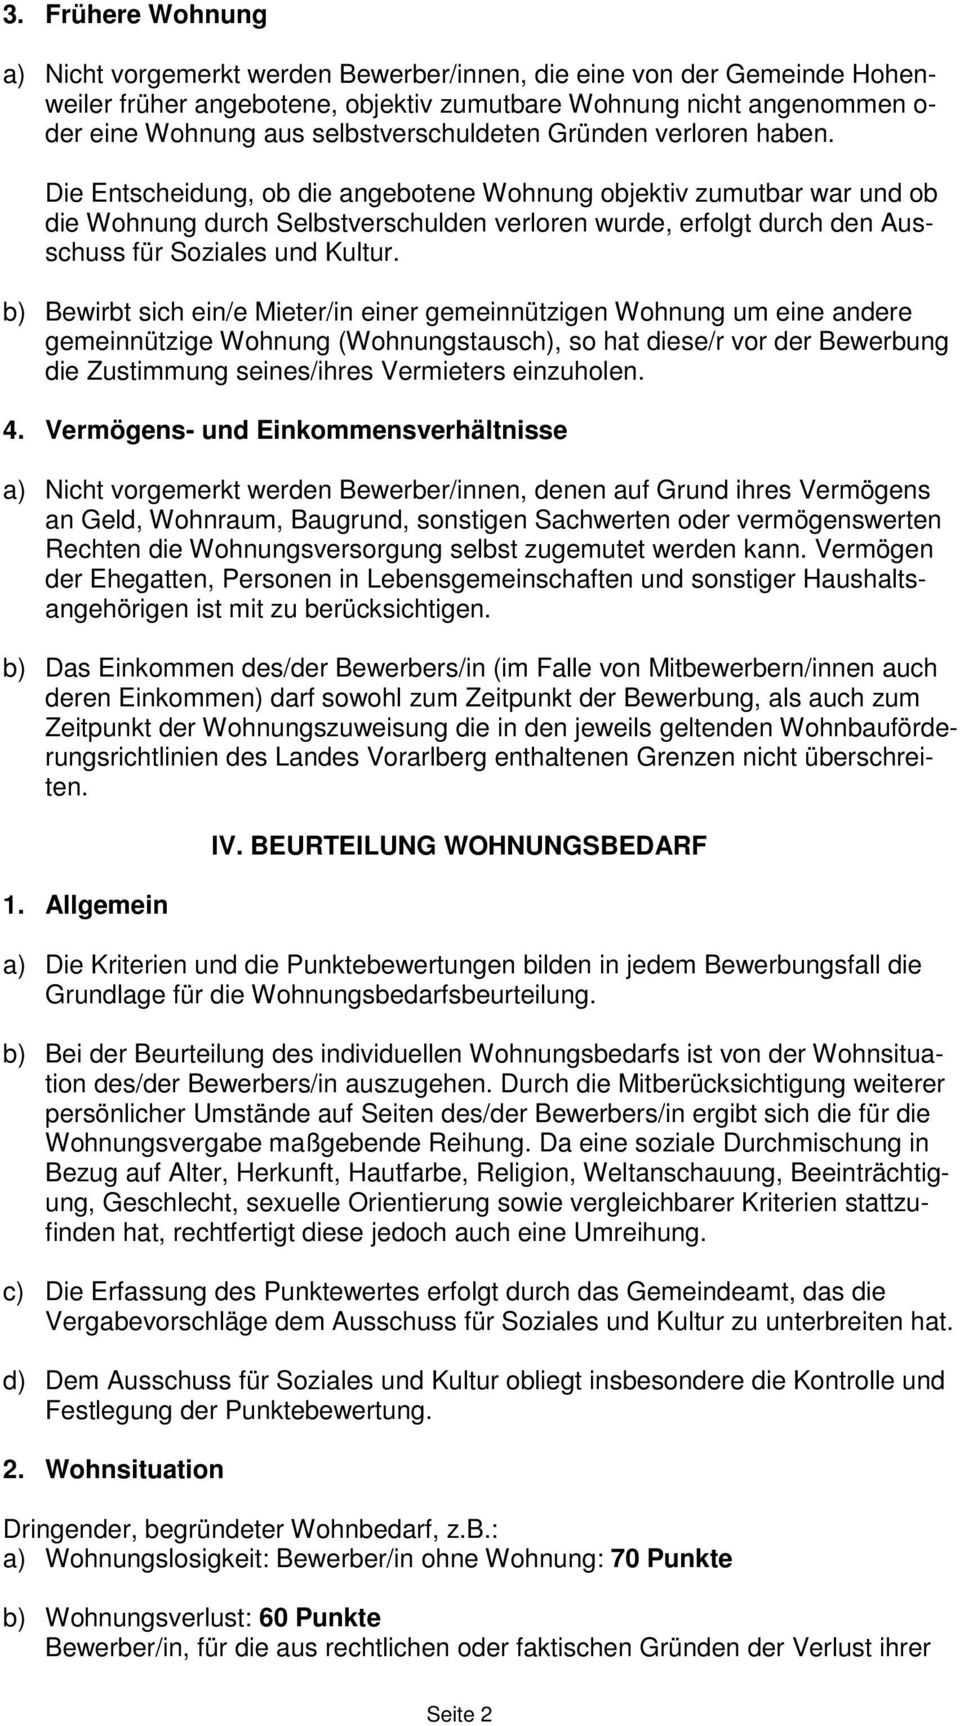 Wohnungsvergabe Richtlinien Der Gemeinde Hohenweiler Pdf Free Download